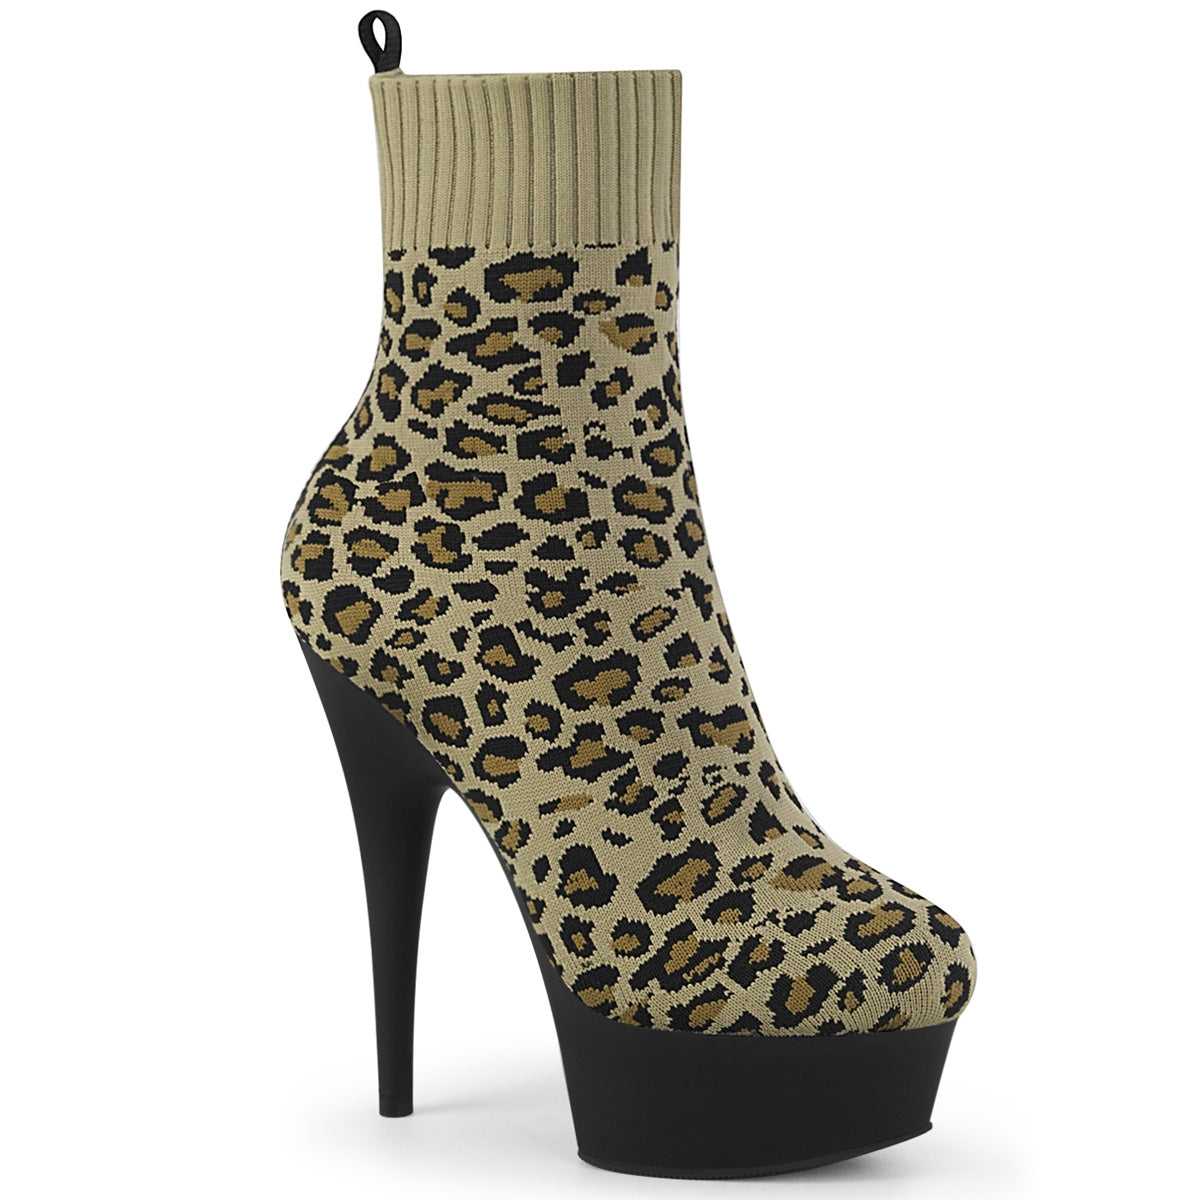 DELIGHT-1002LP 6" Heel Tan Leopard Print Pole Dancer Shoes